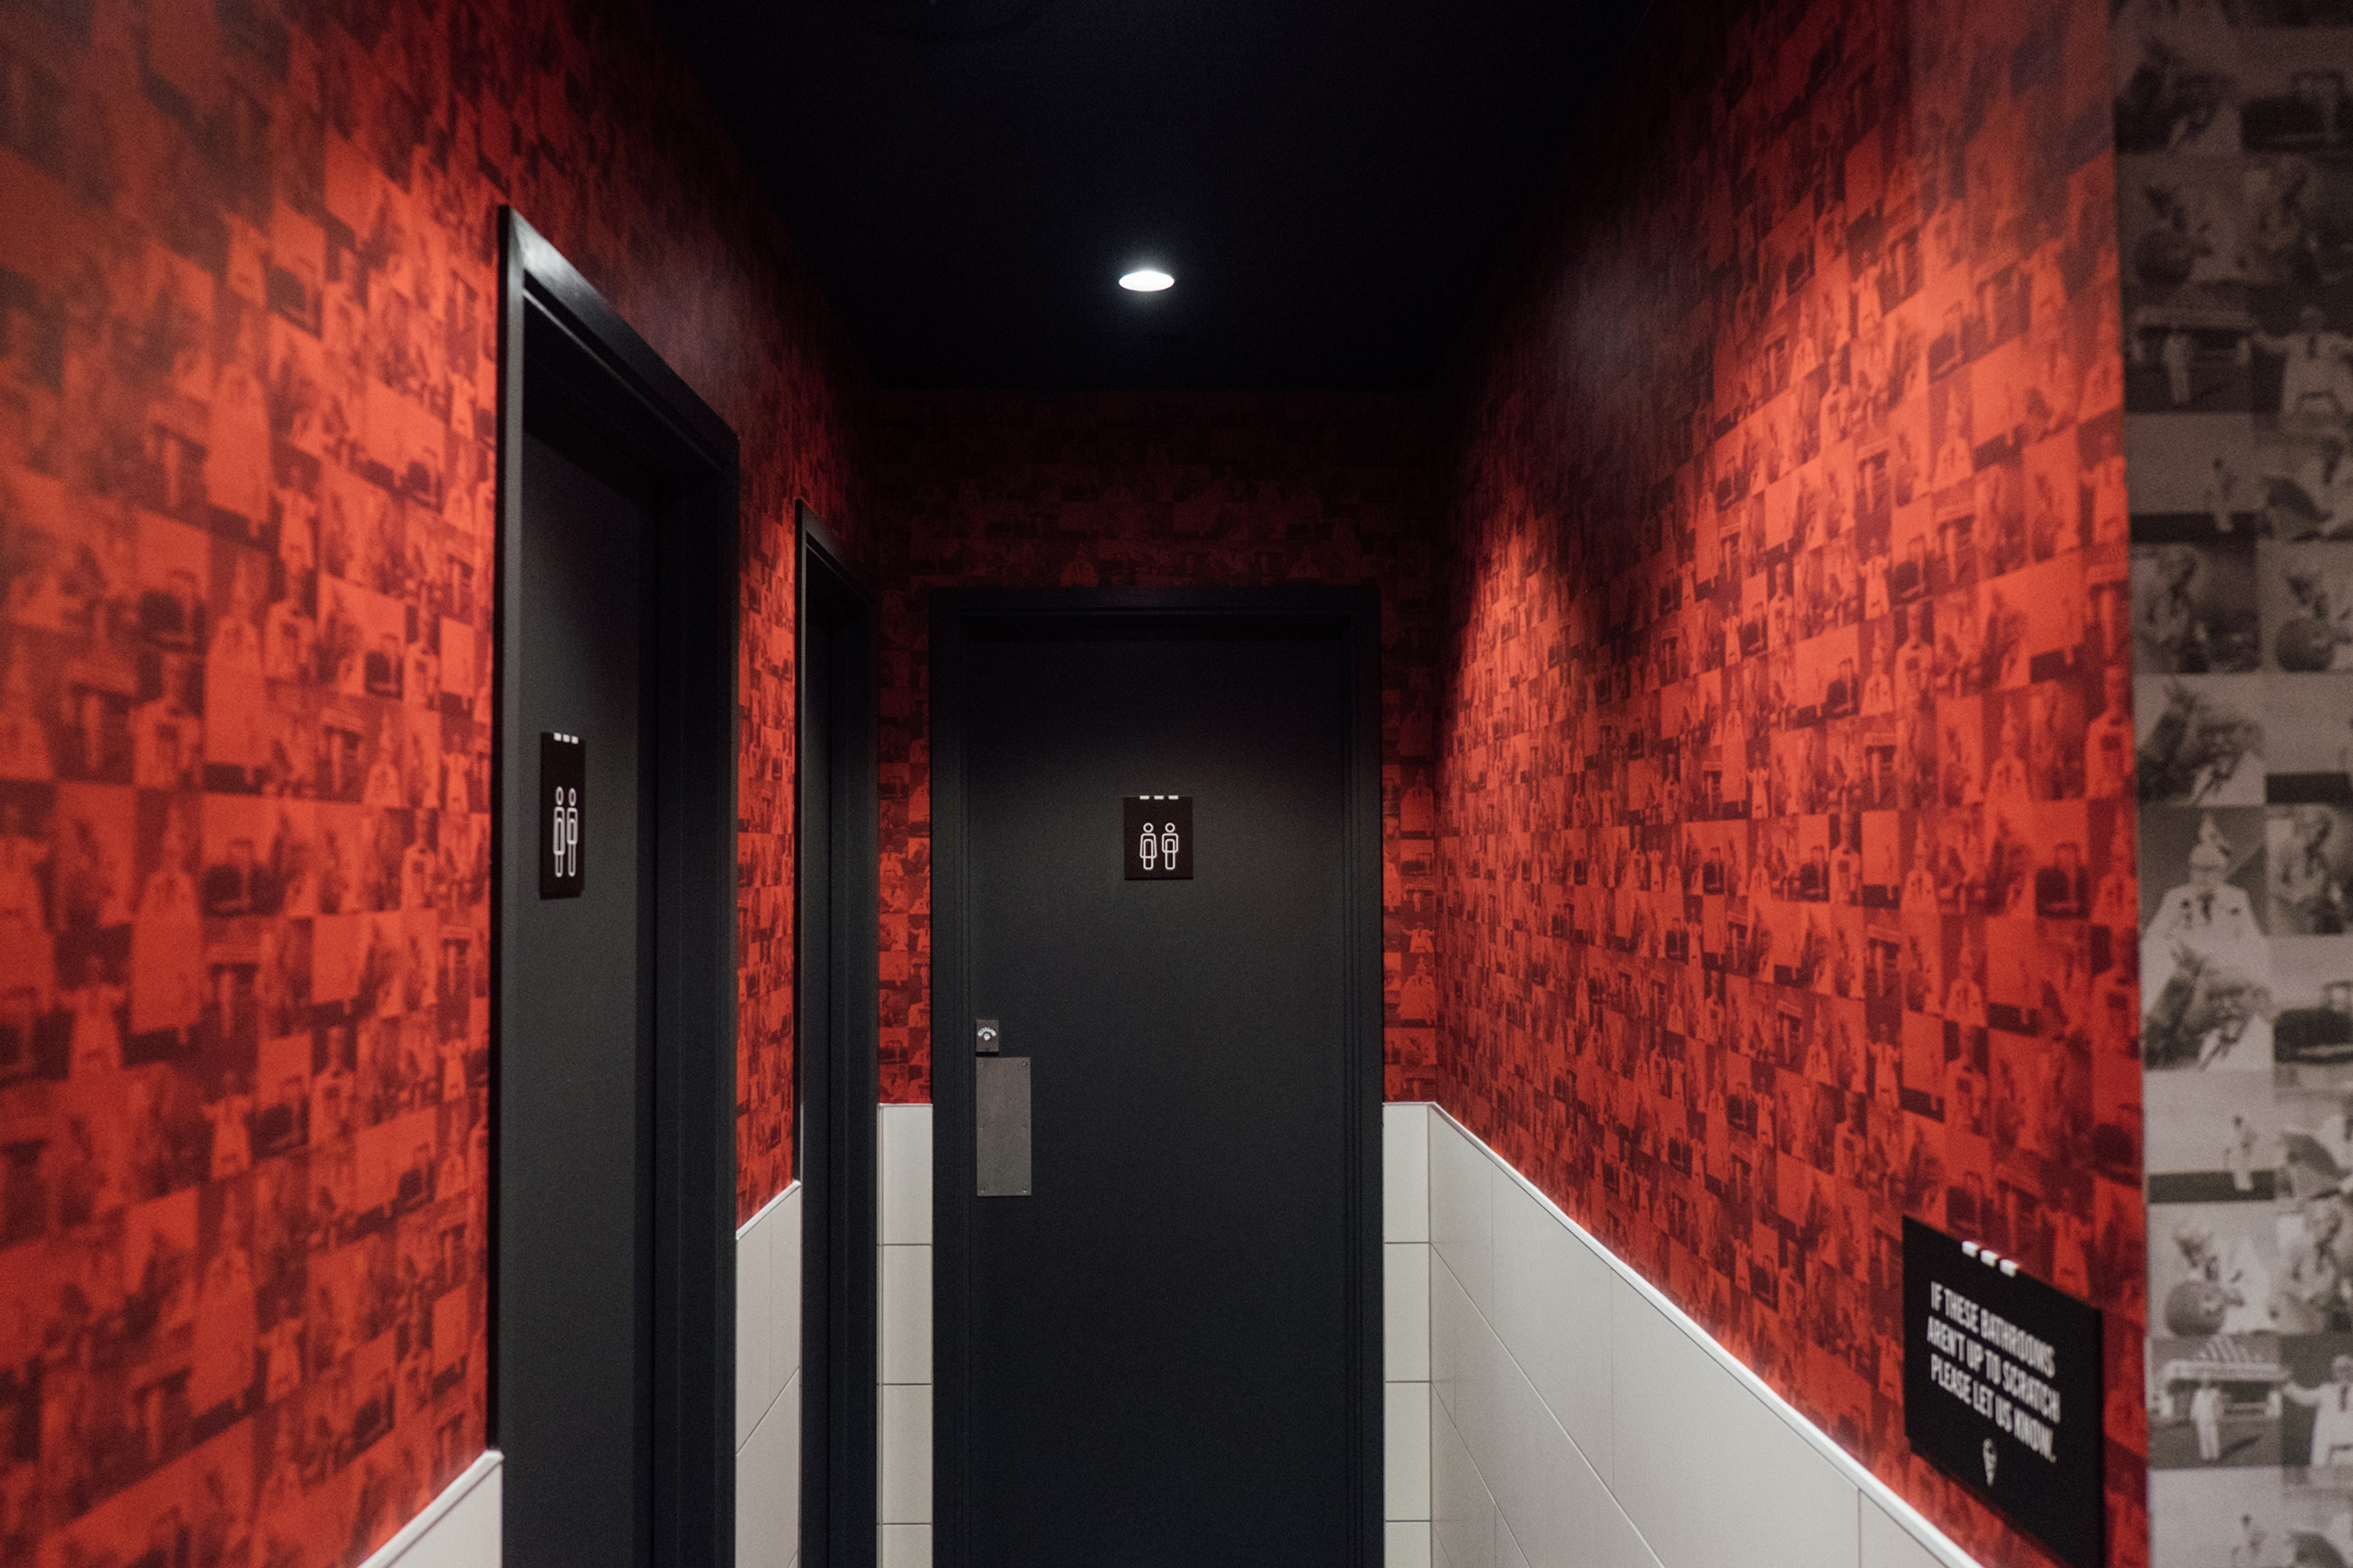 KFC Fort St toilet wallpaper